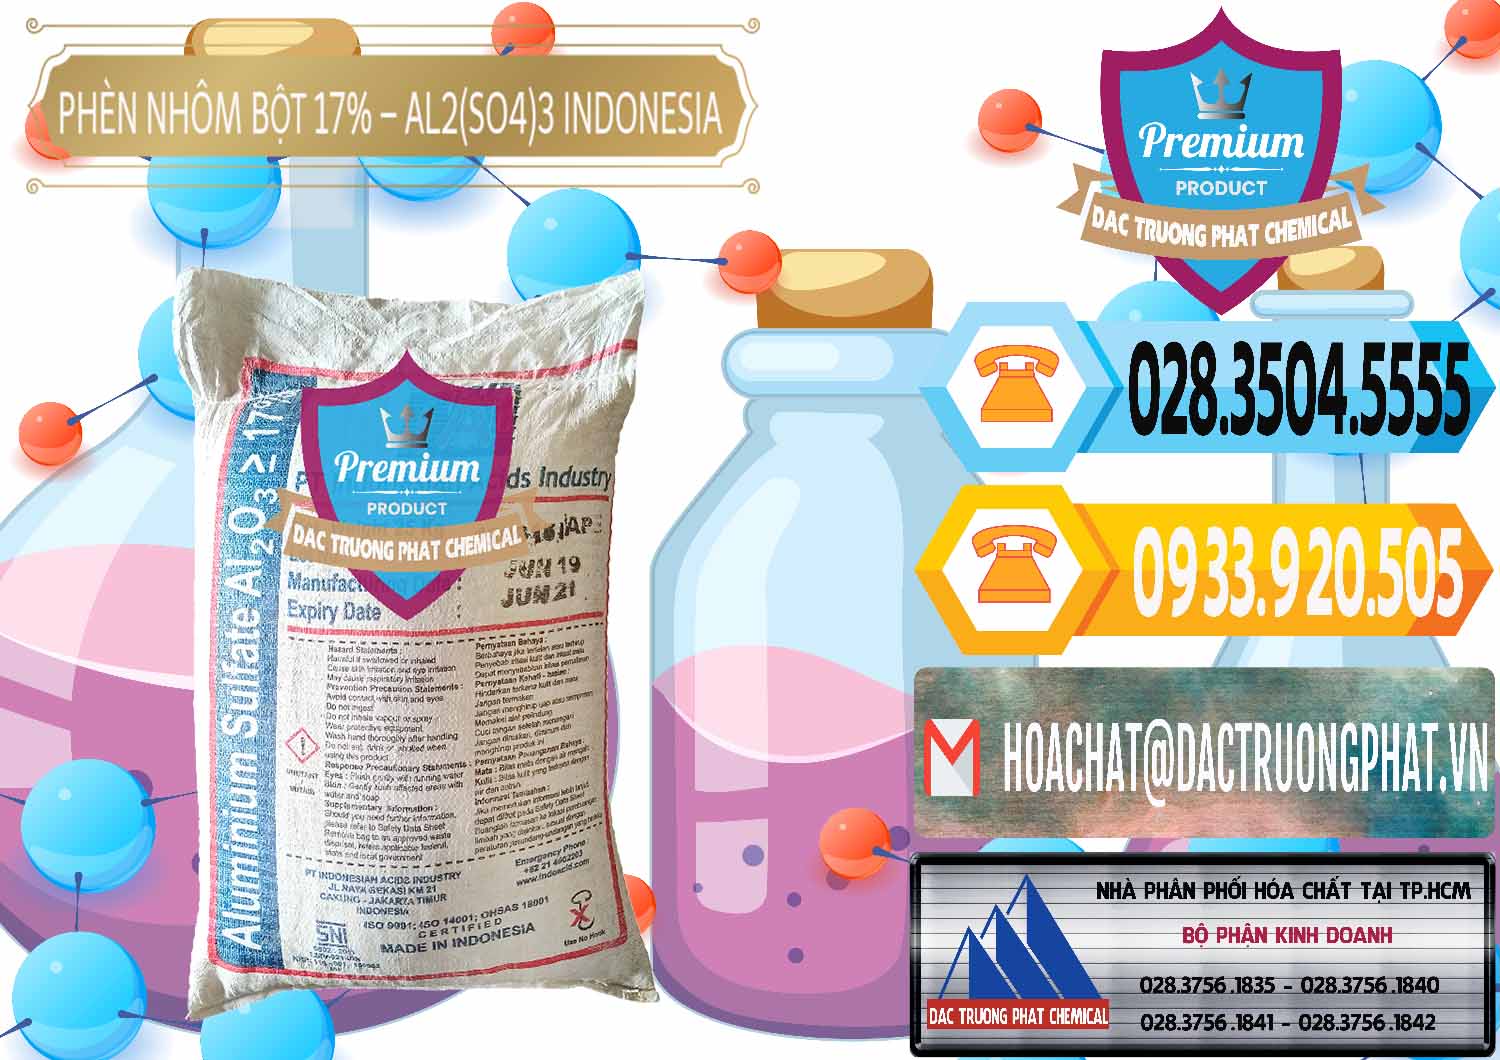 Đơn vị chuyên bán ( phân phối ) Phèn Nhôm Bột - Al2(SO4)3 17% bao 25kg Indonesia - 0114 - Đơn vị bán & phân phối hóa chất tại TP.HCM - hoachattayrua.net